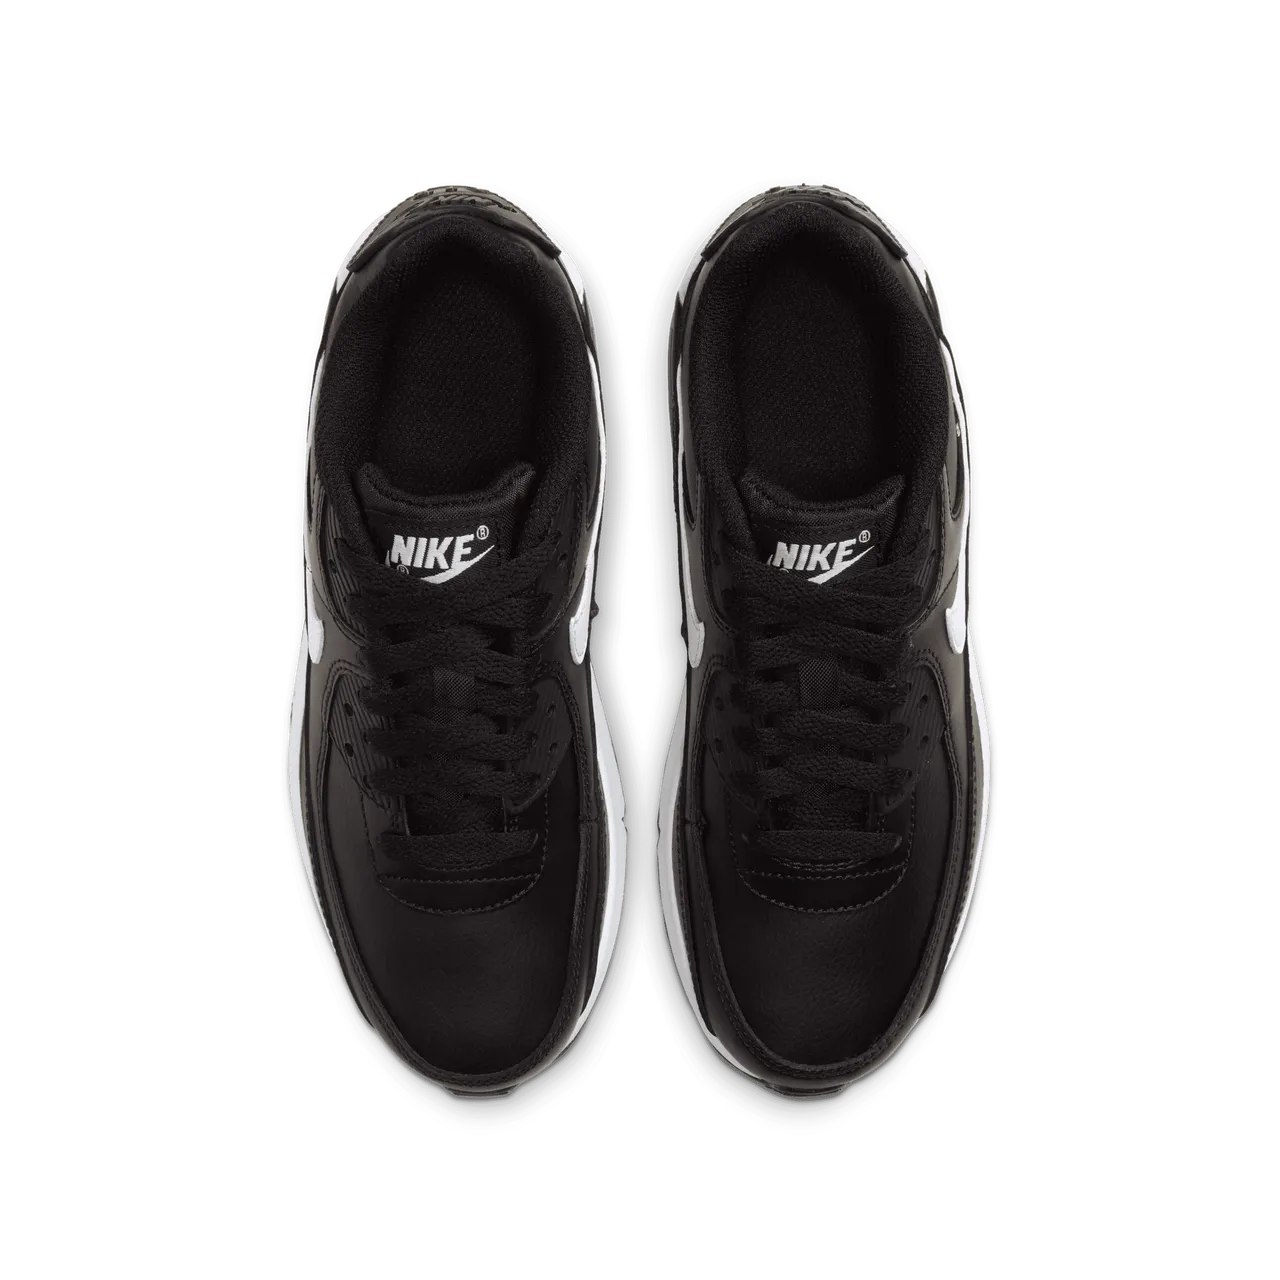 Nike Air Max 90 LTR Schuh für ältere Kinder - Schwarz